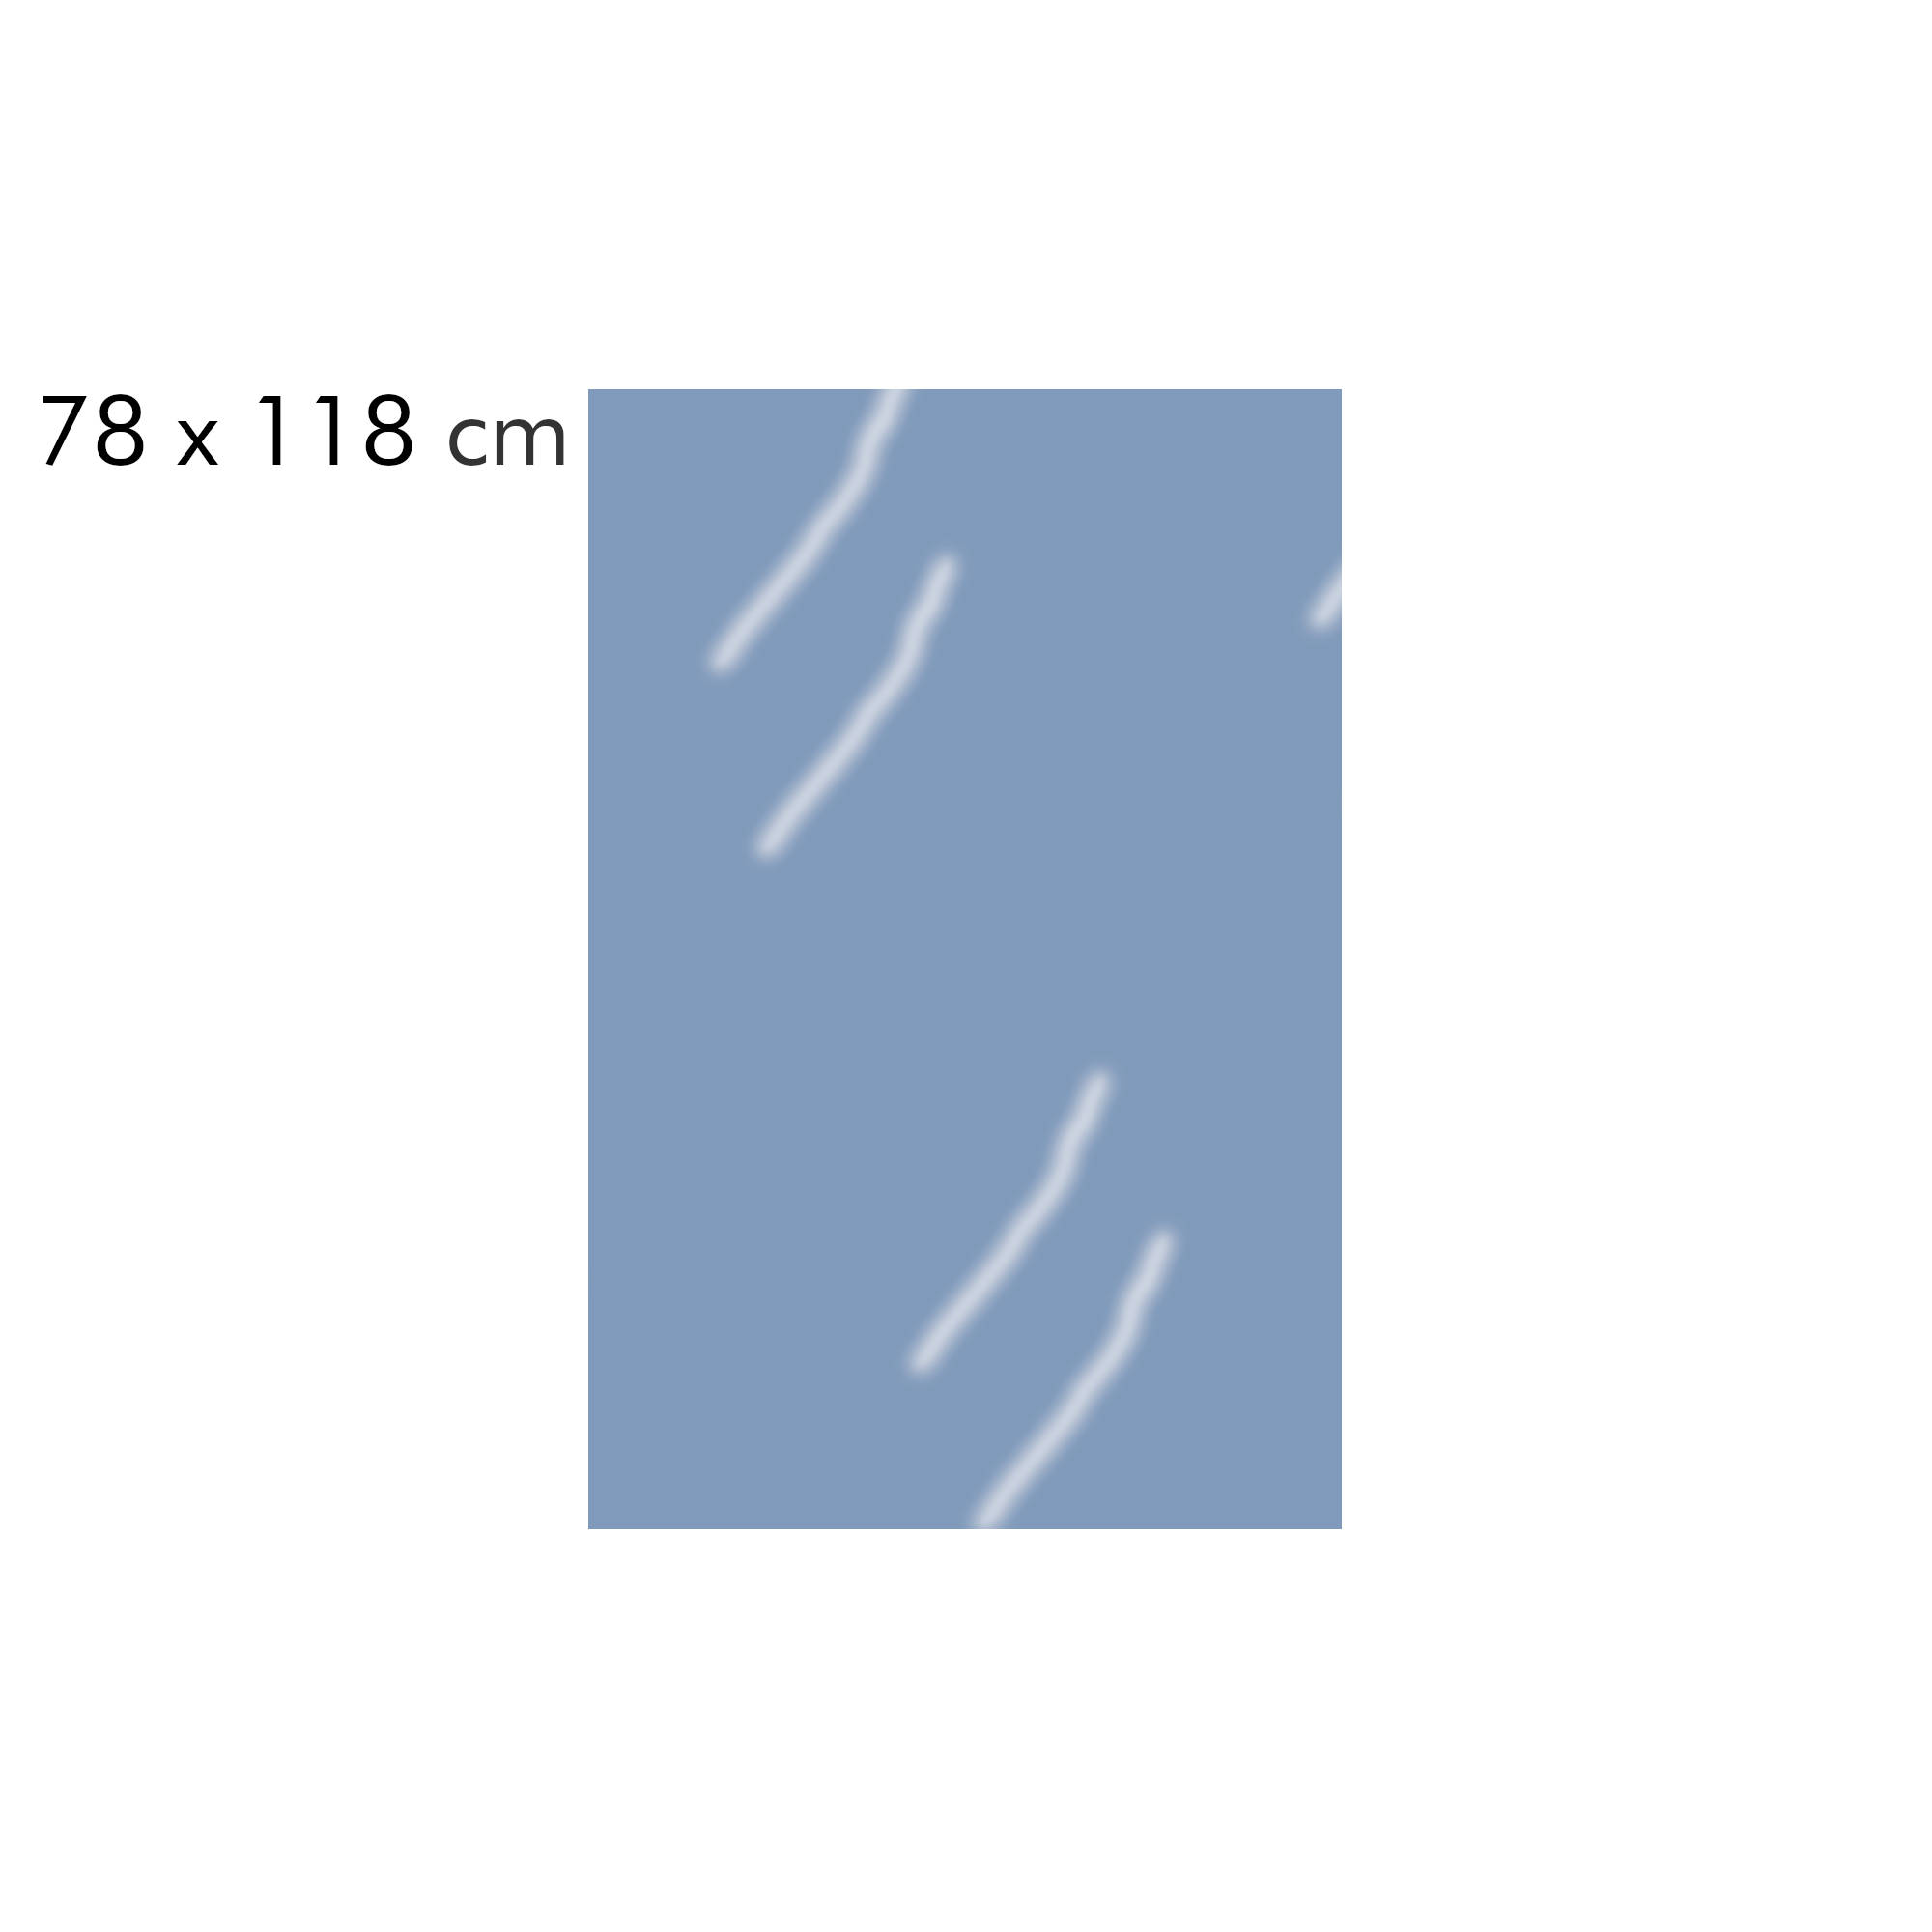 Image of swatch windowsize window size 78x118